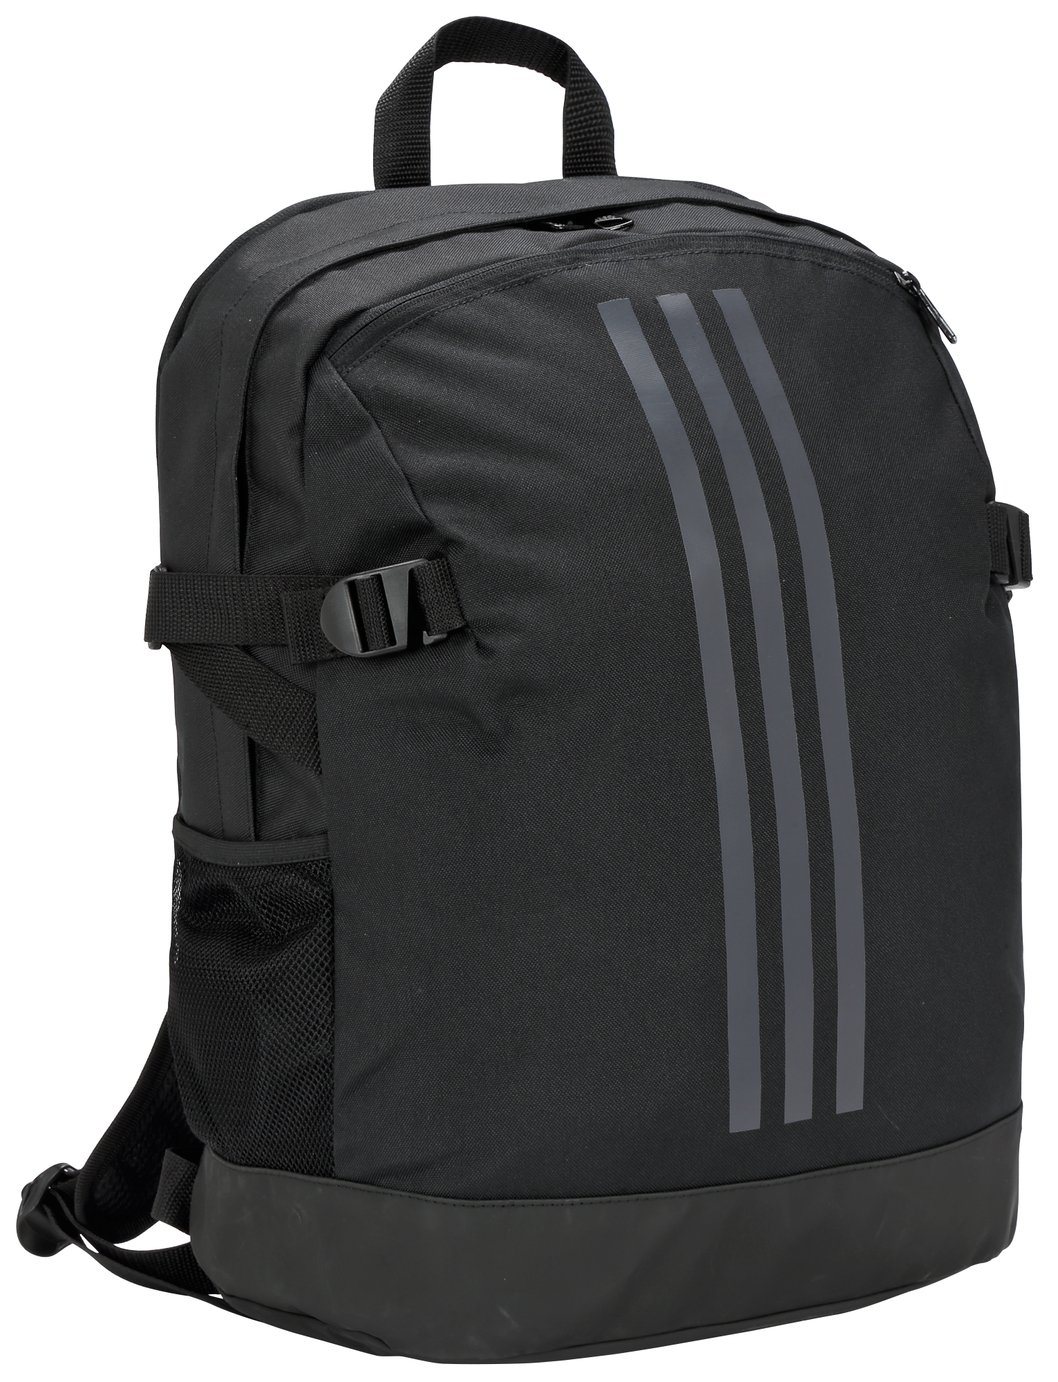 Adidas PowerPlus Backpack Reviews